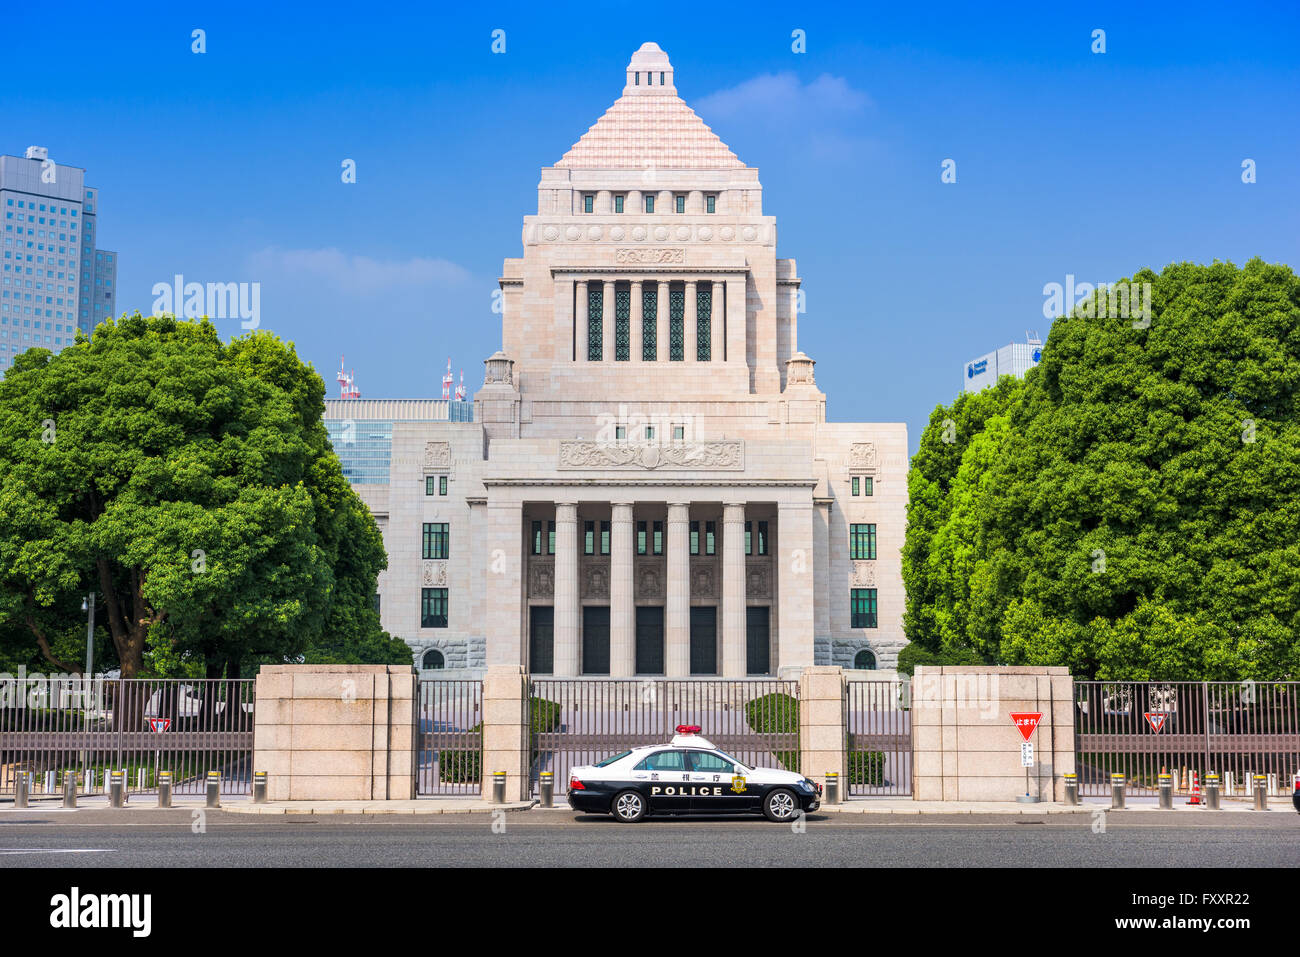 TOKYO, JAPON - 31 juillet 2015 : un policier crusier ci-dessous la Diète nationale du Japon. Banque D'Images